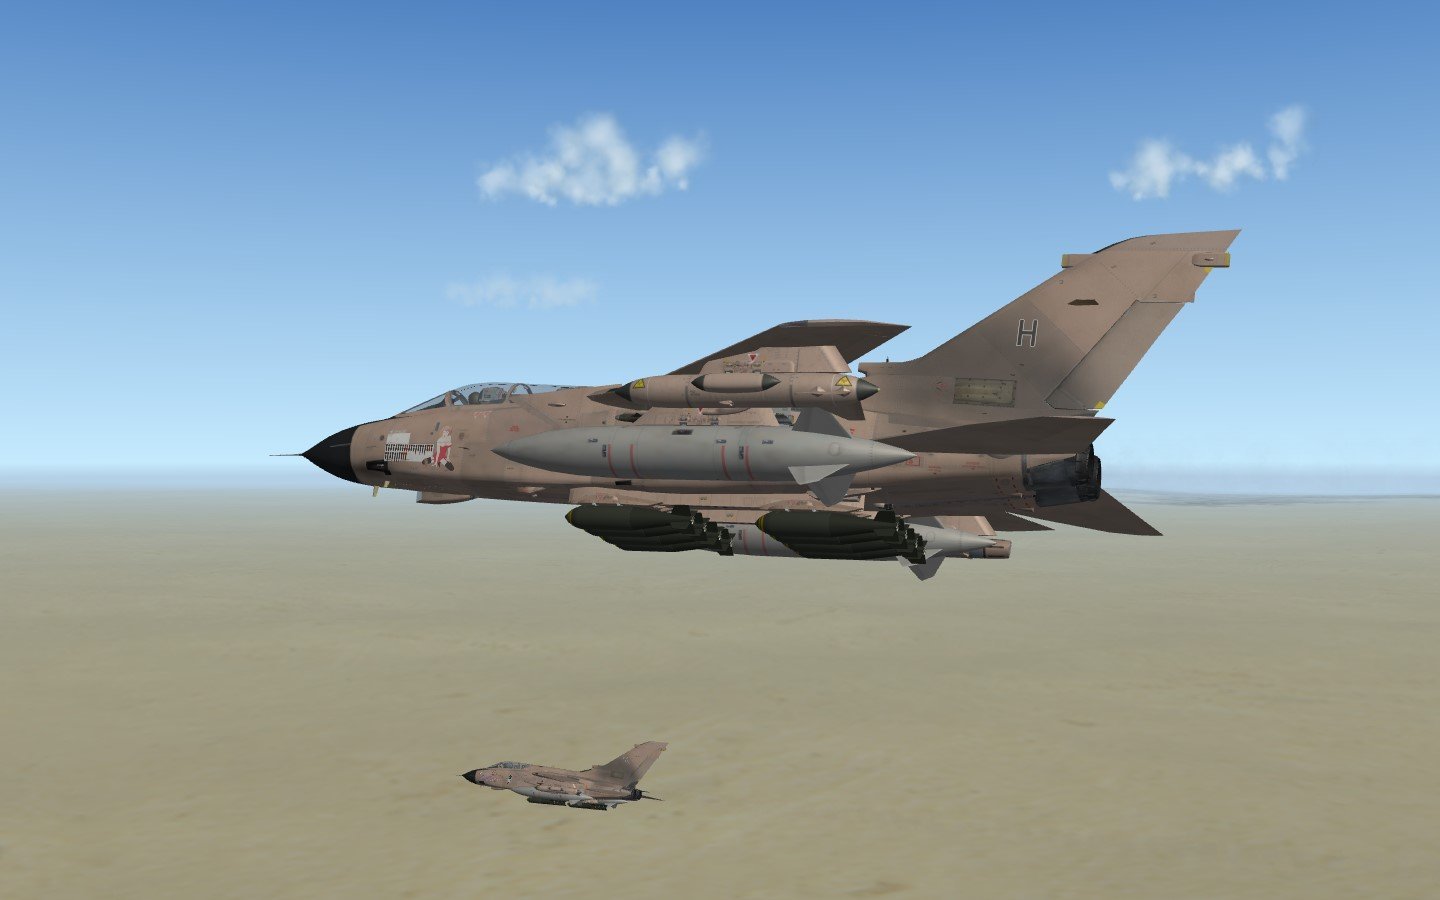 Tornado GR.1 Desert Storm